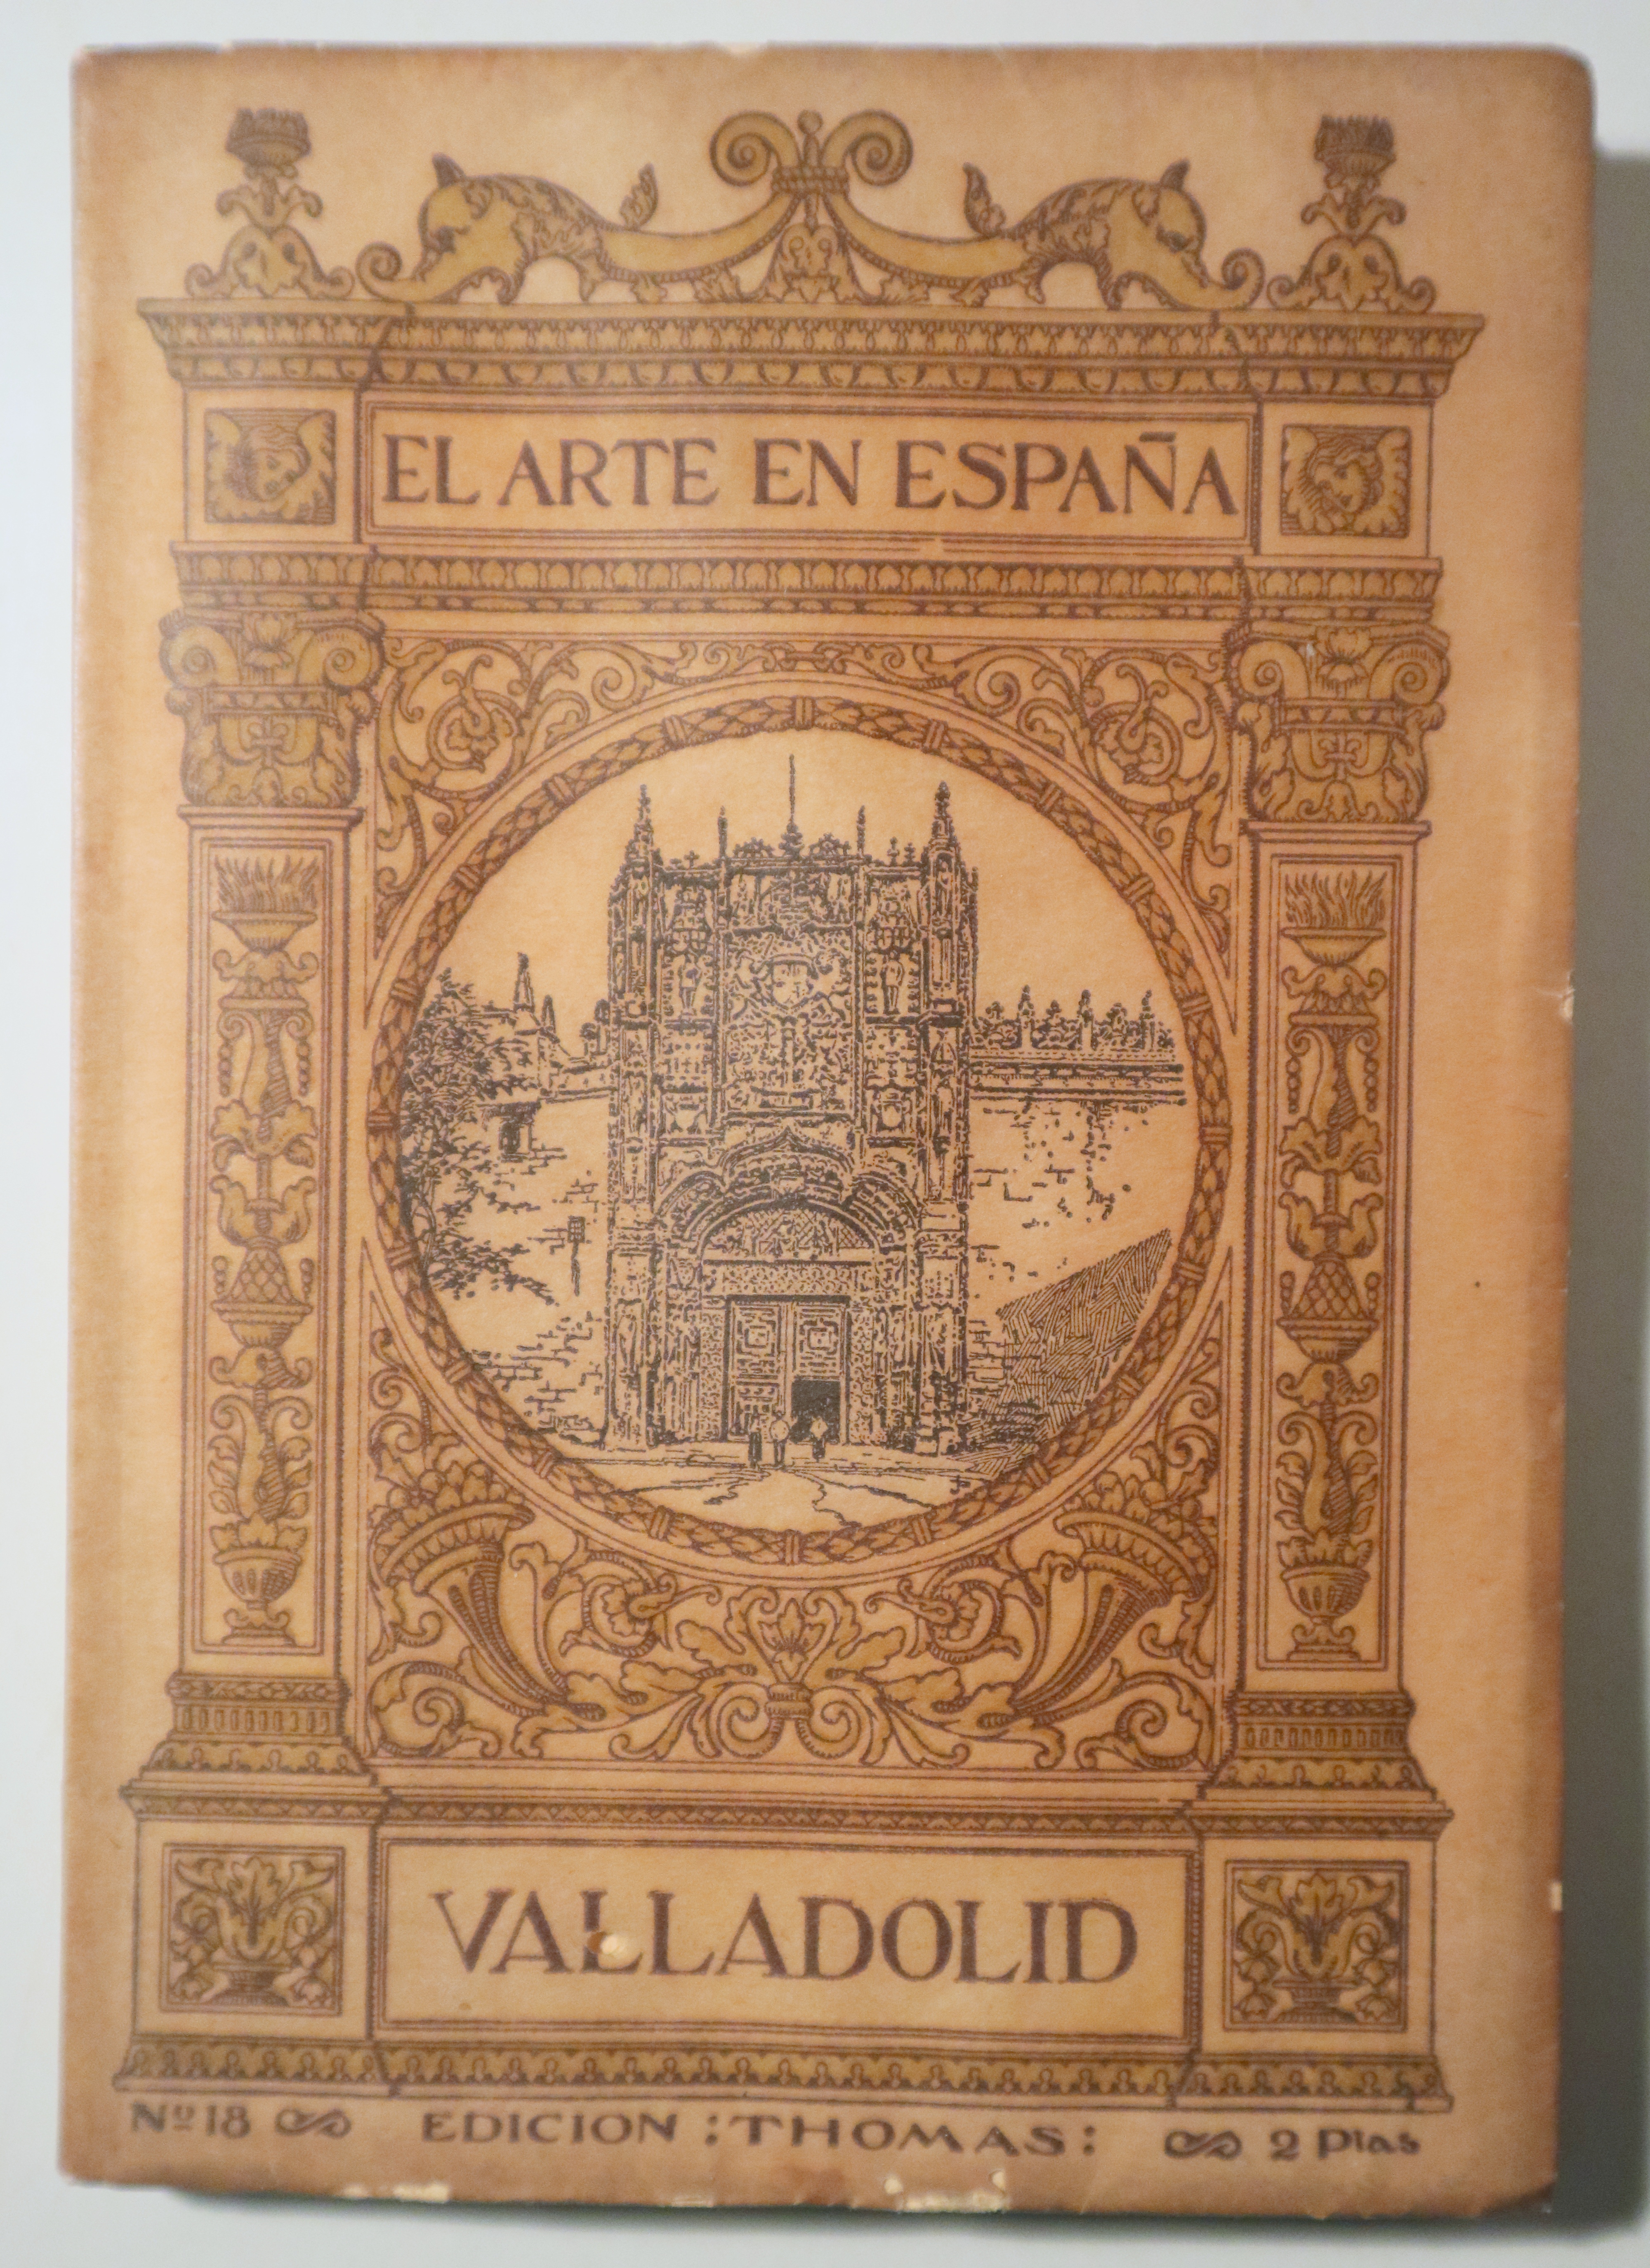 EL ARTE EN ESPAÑA nº 18. Valladolid - Barcelona s/f - Muy ilustrado